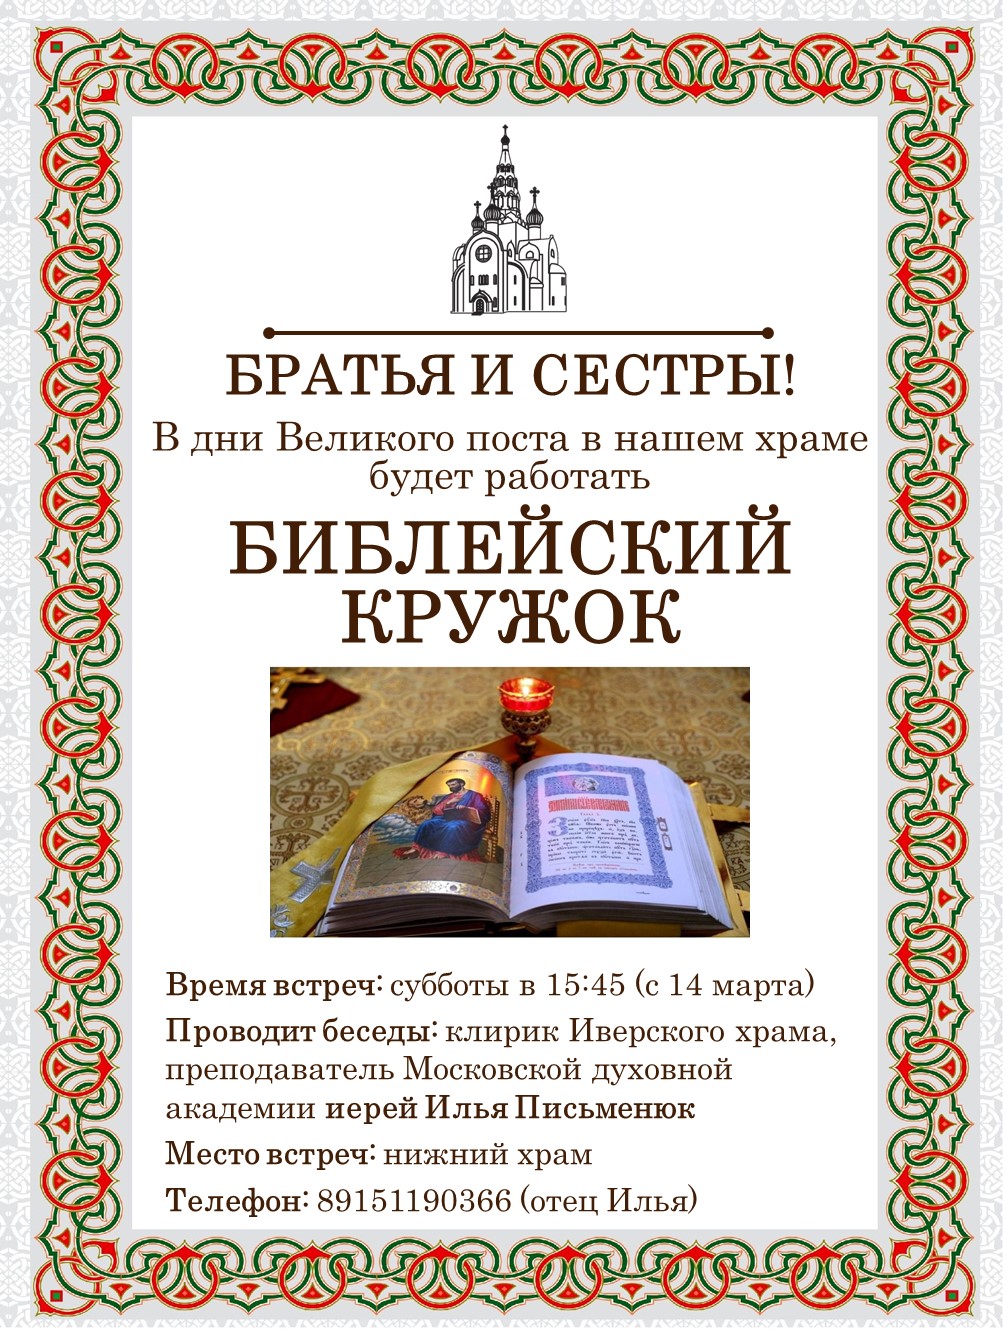 Открытие Библейского кружка в нашем храме